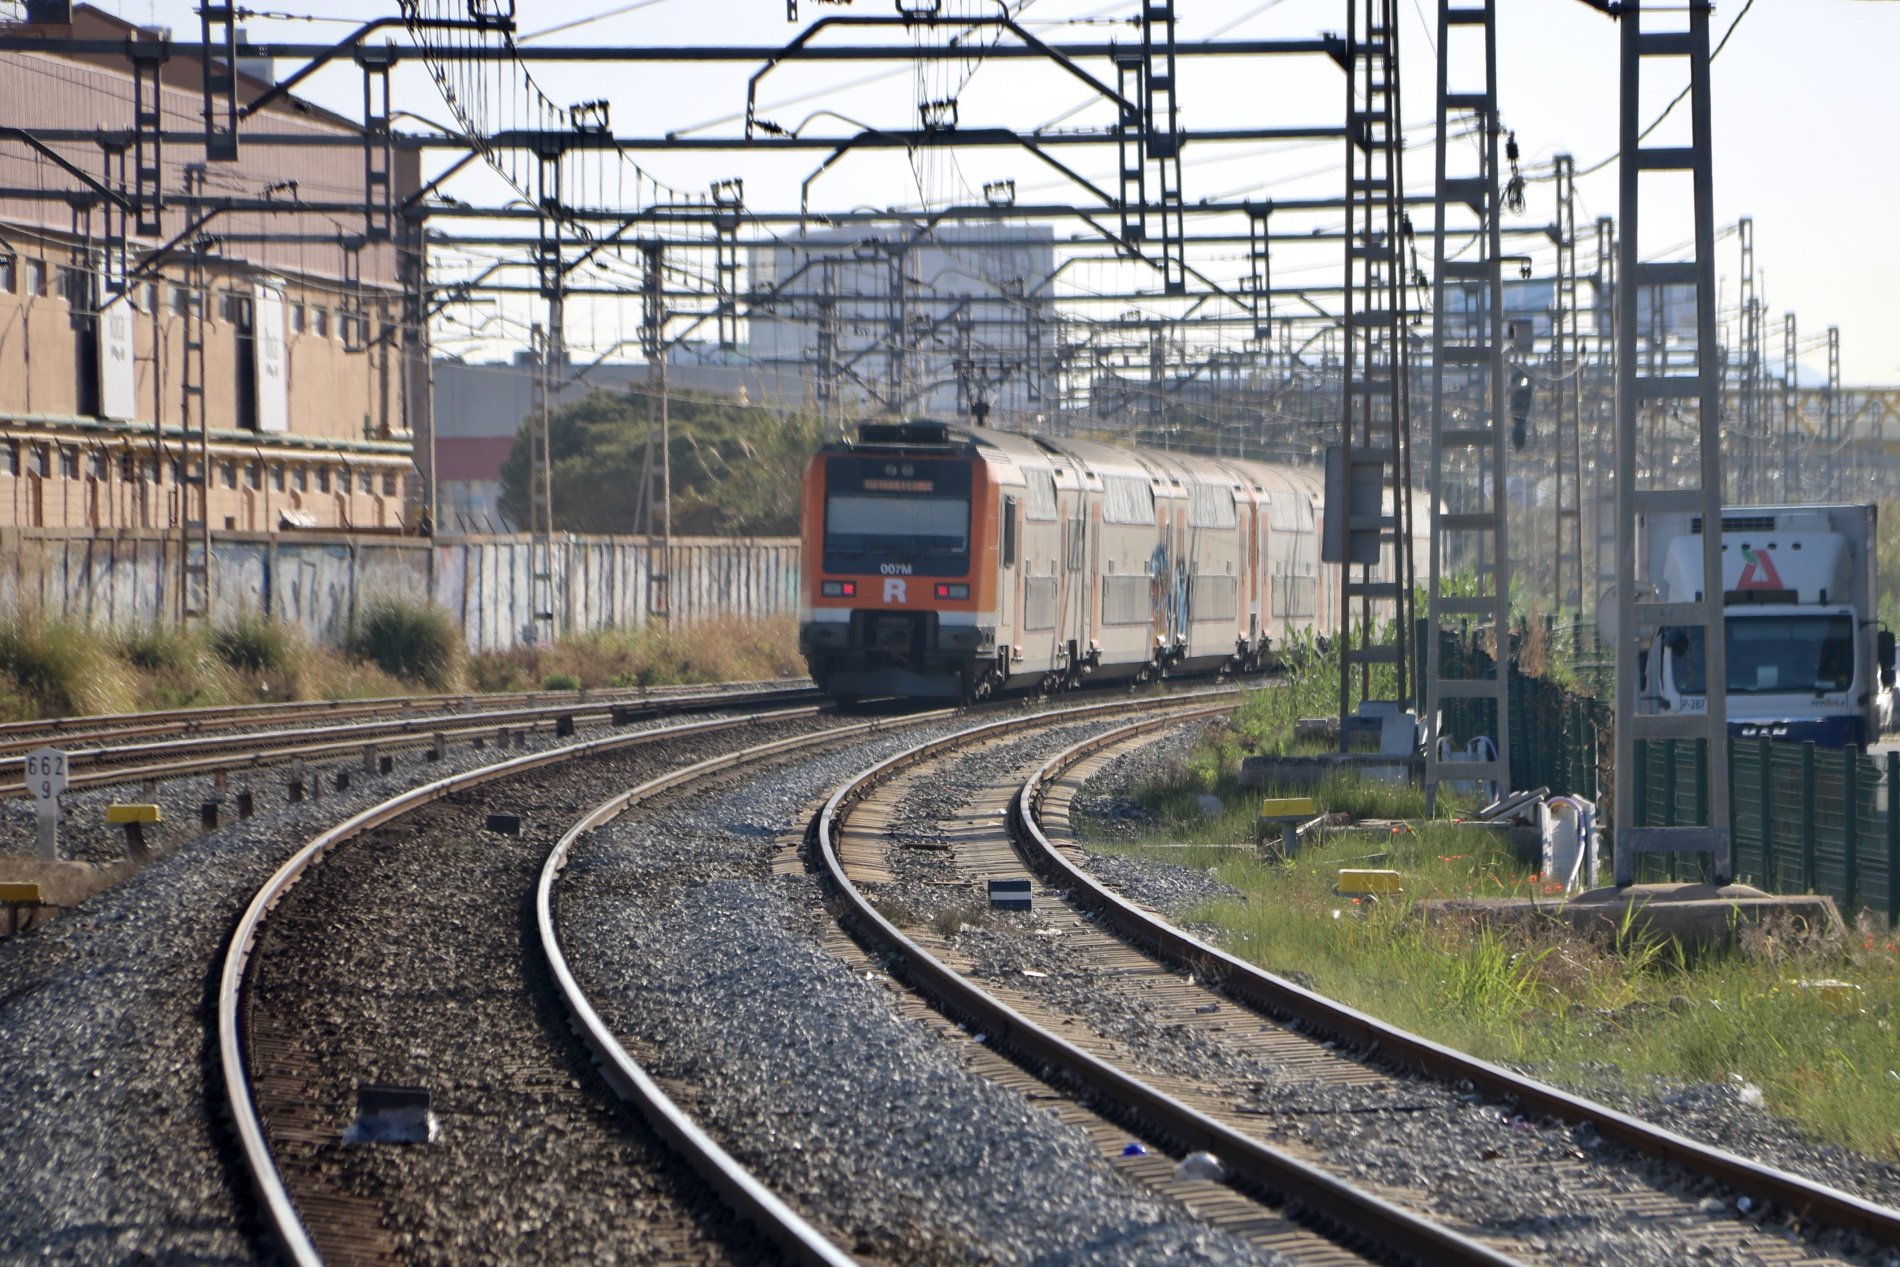 Restablecido el servicio de la R3 entre Torelló y Manlleu tras retirar el tren atrapado desde el martes